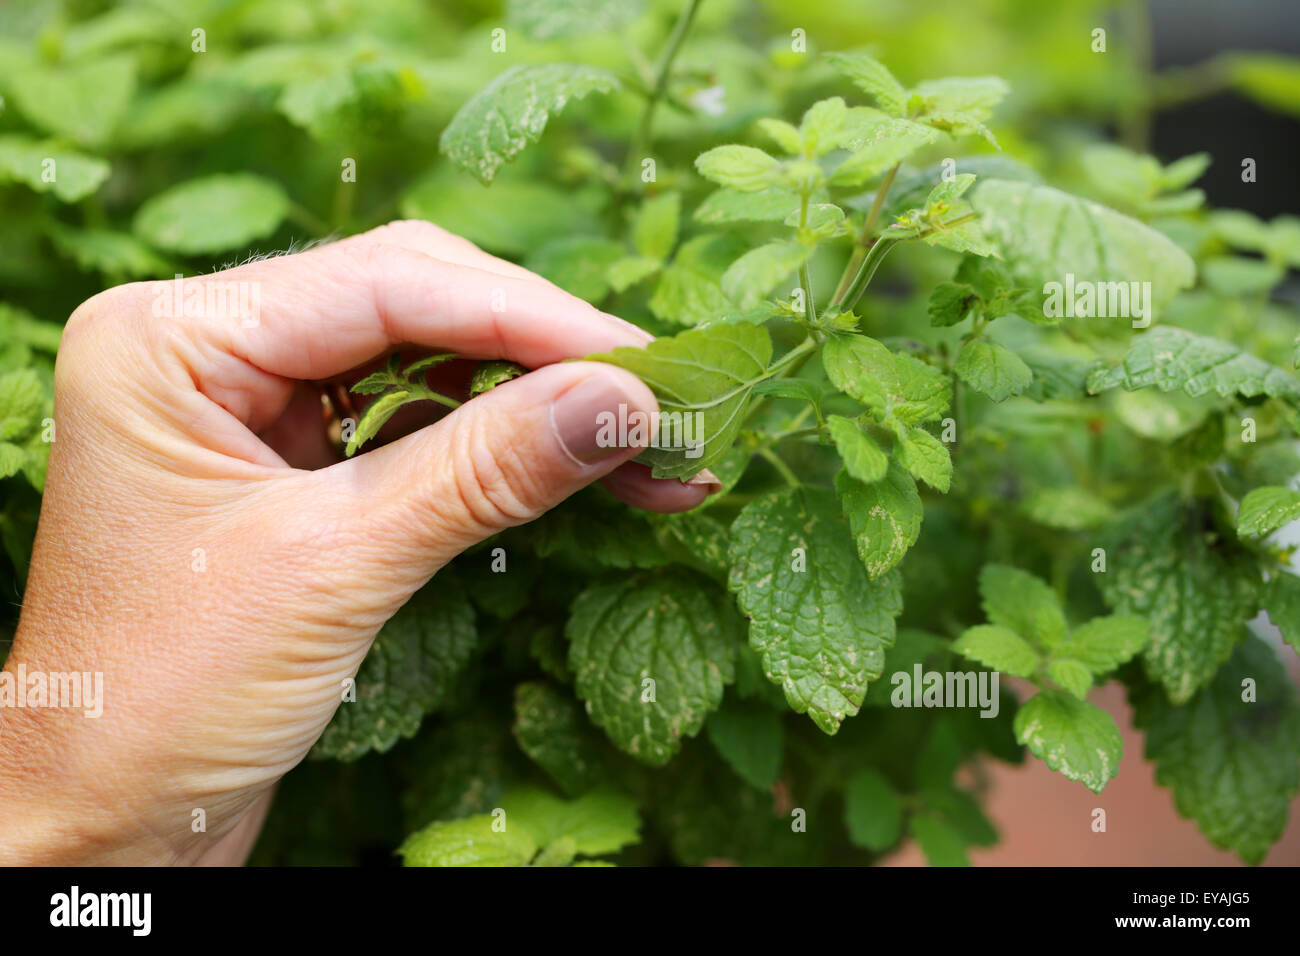 Eine heimische Zitronenmelisse Kraut Pflanze, Melissa officinalis, sanft zwischen zwei Fingern der zitronige Duft zu lösen, zerquetscht zu werden Stockfoto